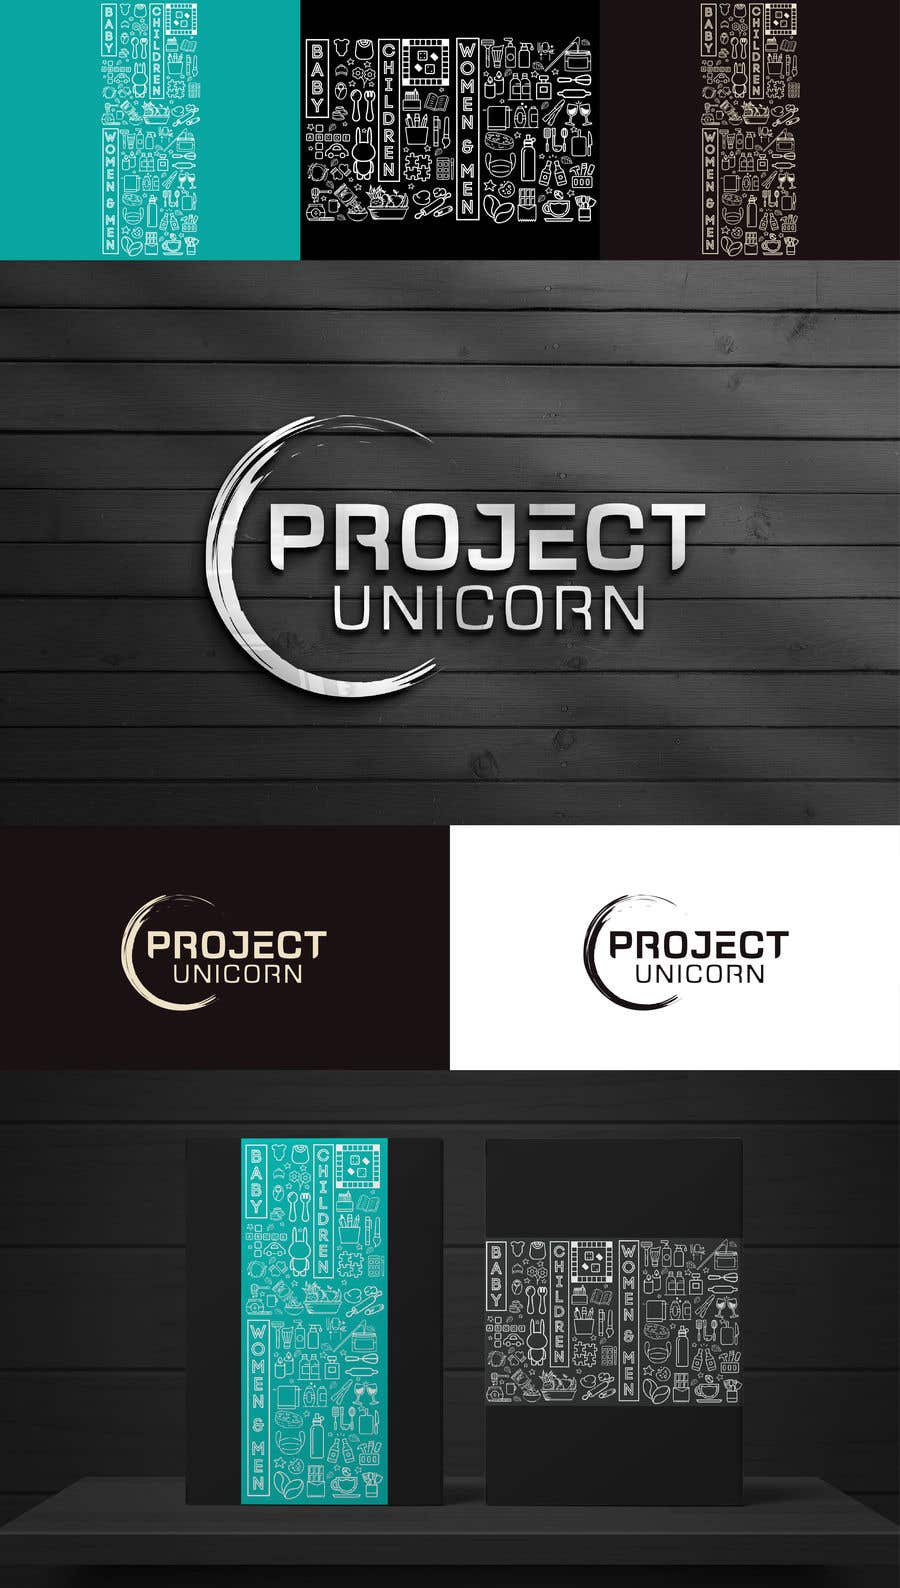 
                                                                                                            Bài tham dự cuộc thi #                                        131
                                     cho                                         Project Unicorn
                                    